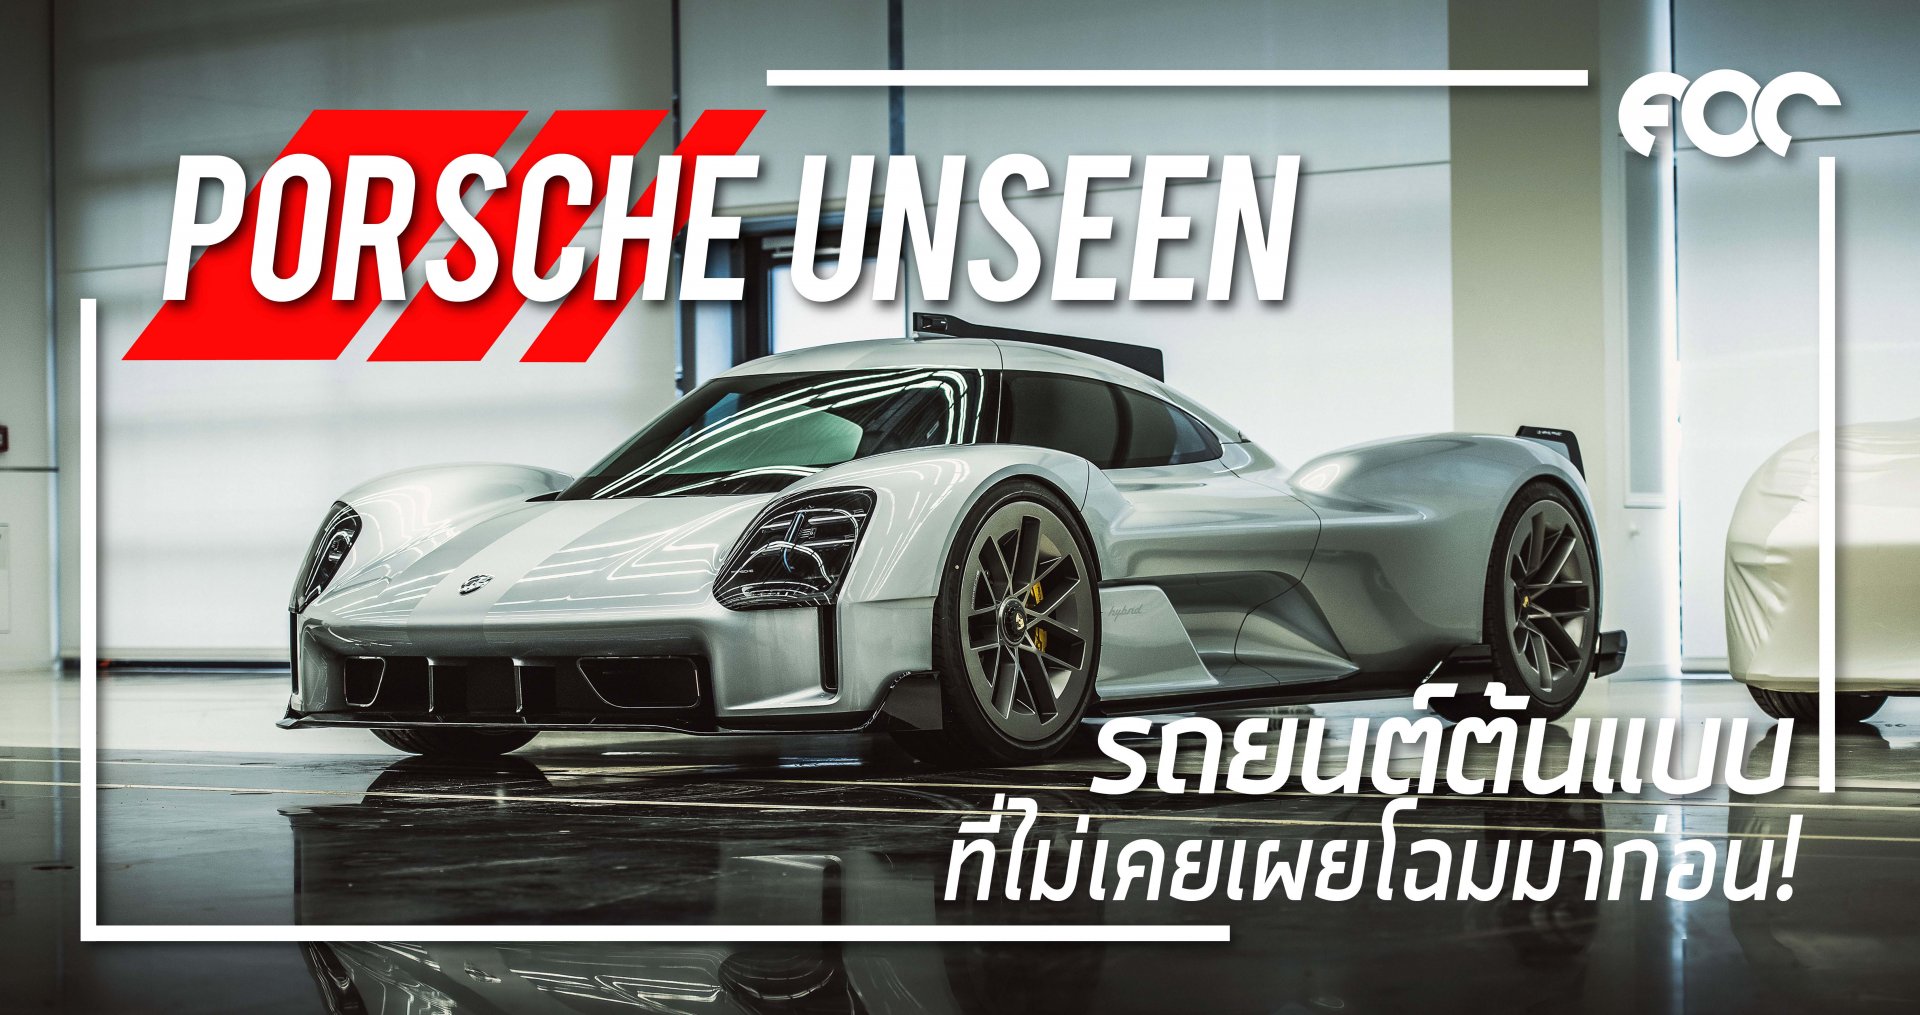 Porsche Unseen” ความลับที่ไม่เคยถูกเปิดเผย!!